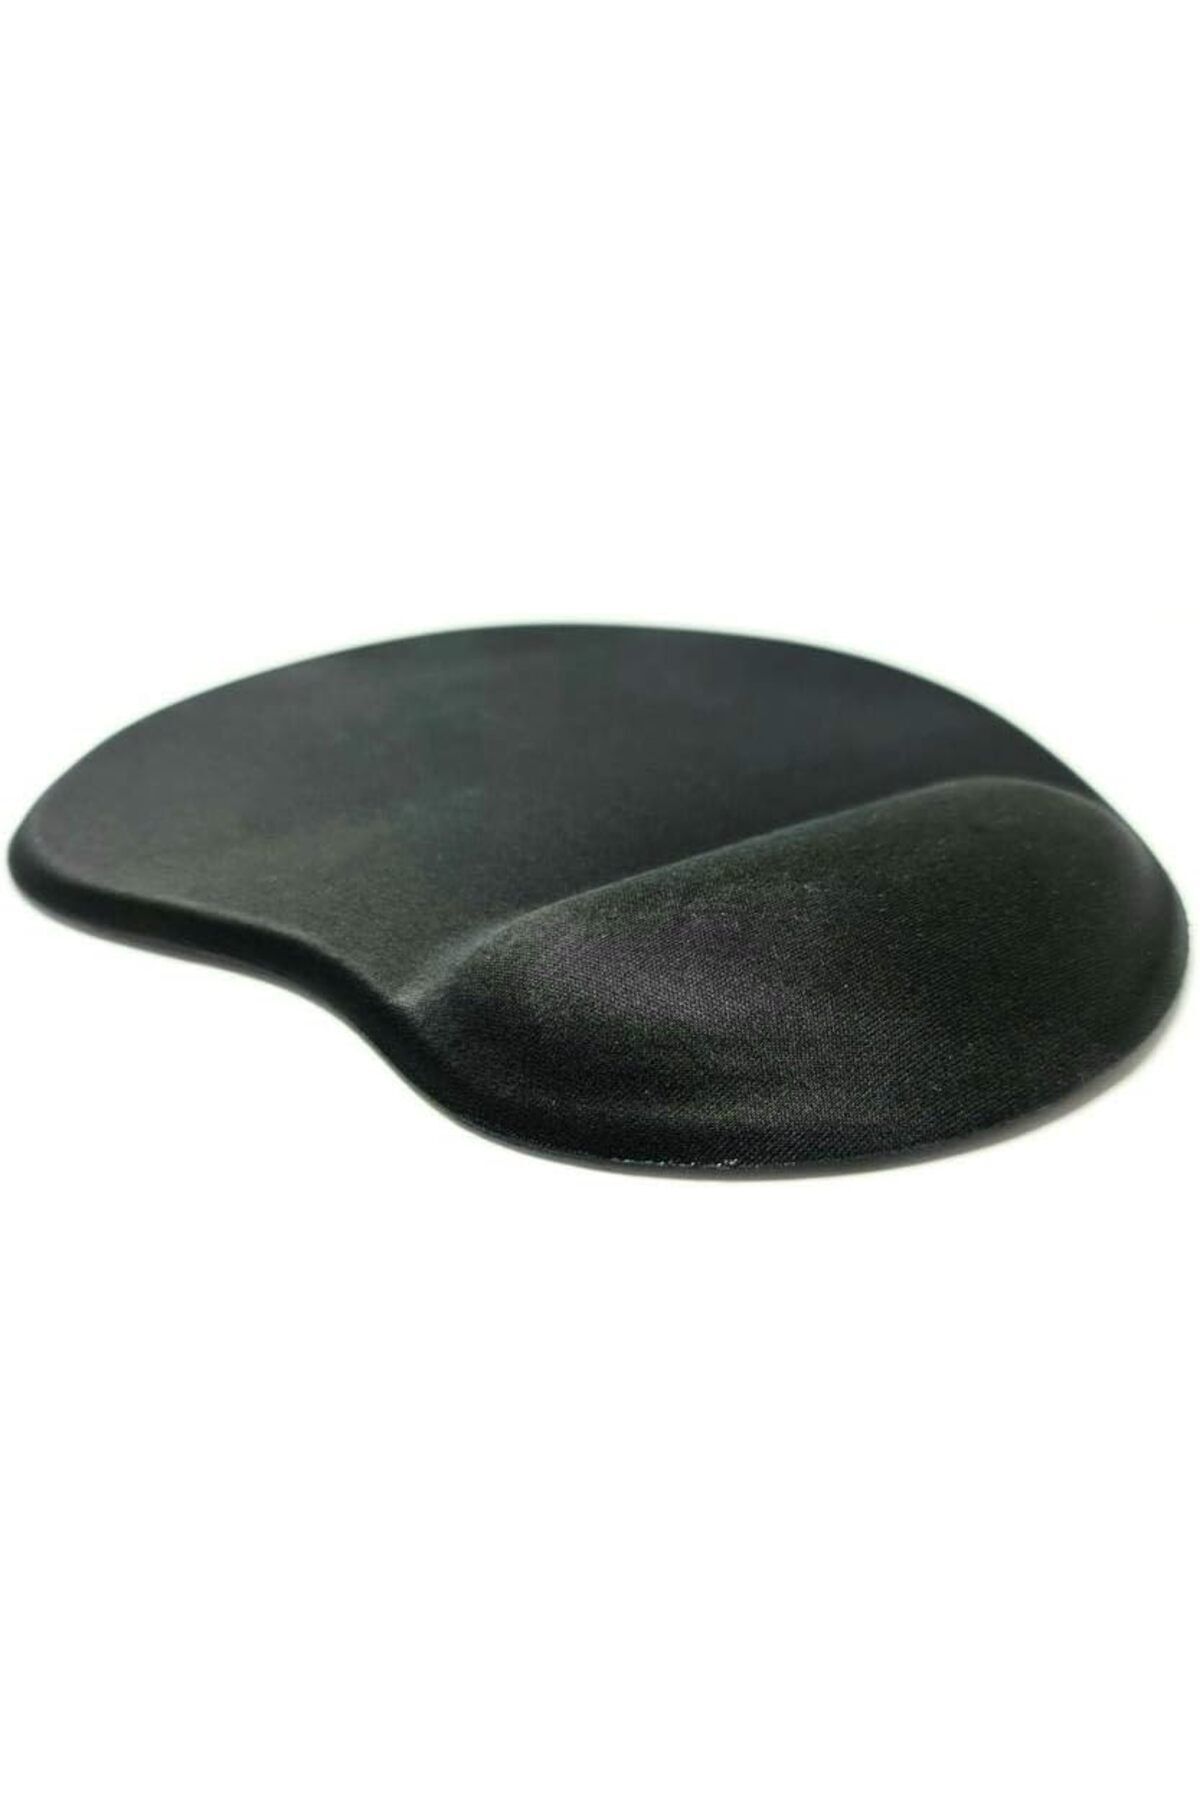 Genel Markalar 300521 Bileklik Destekli Siyah Mouse Pad